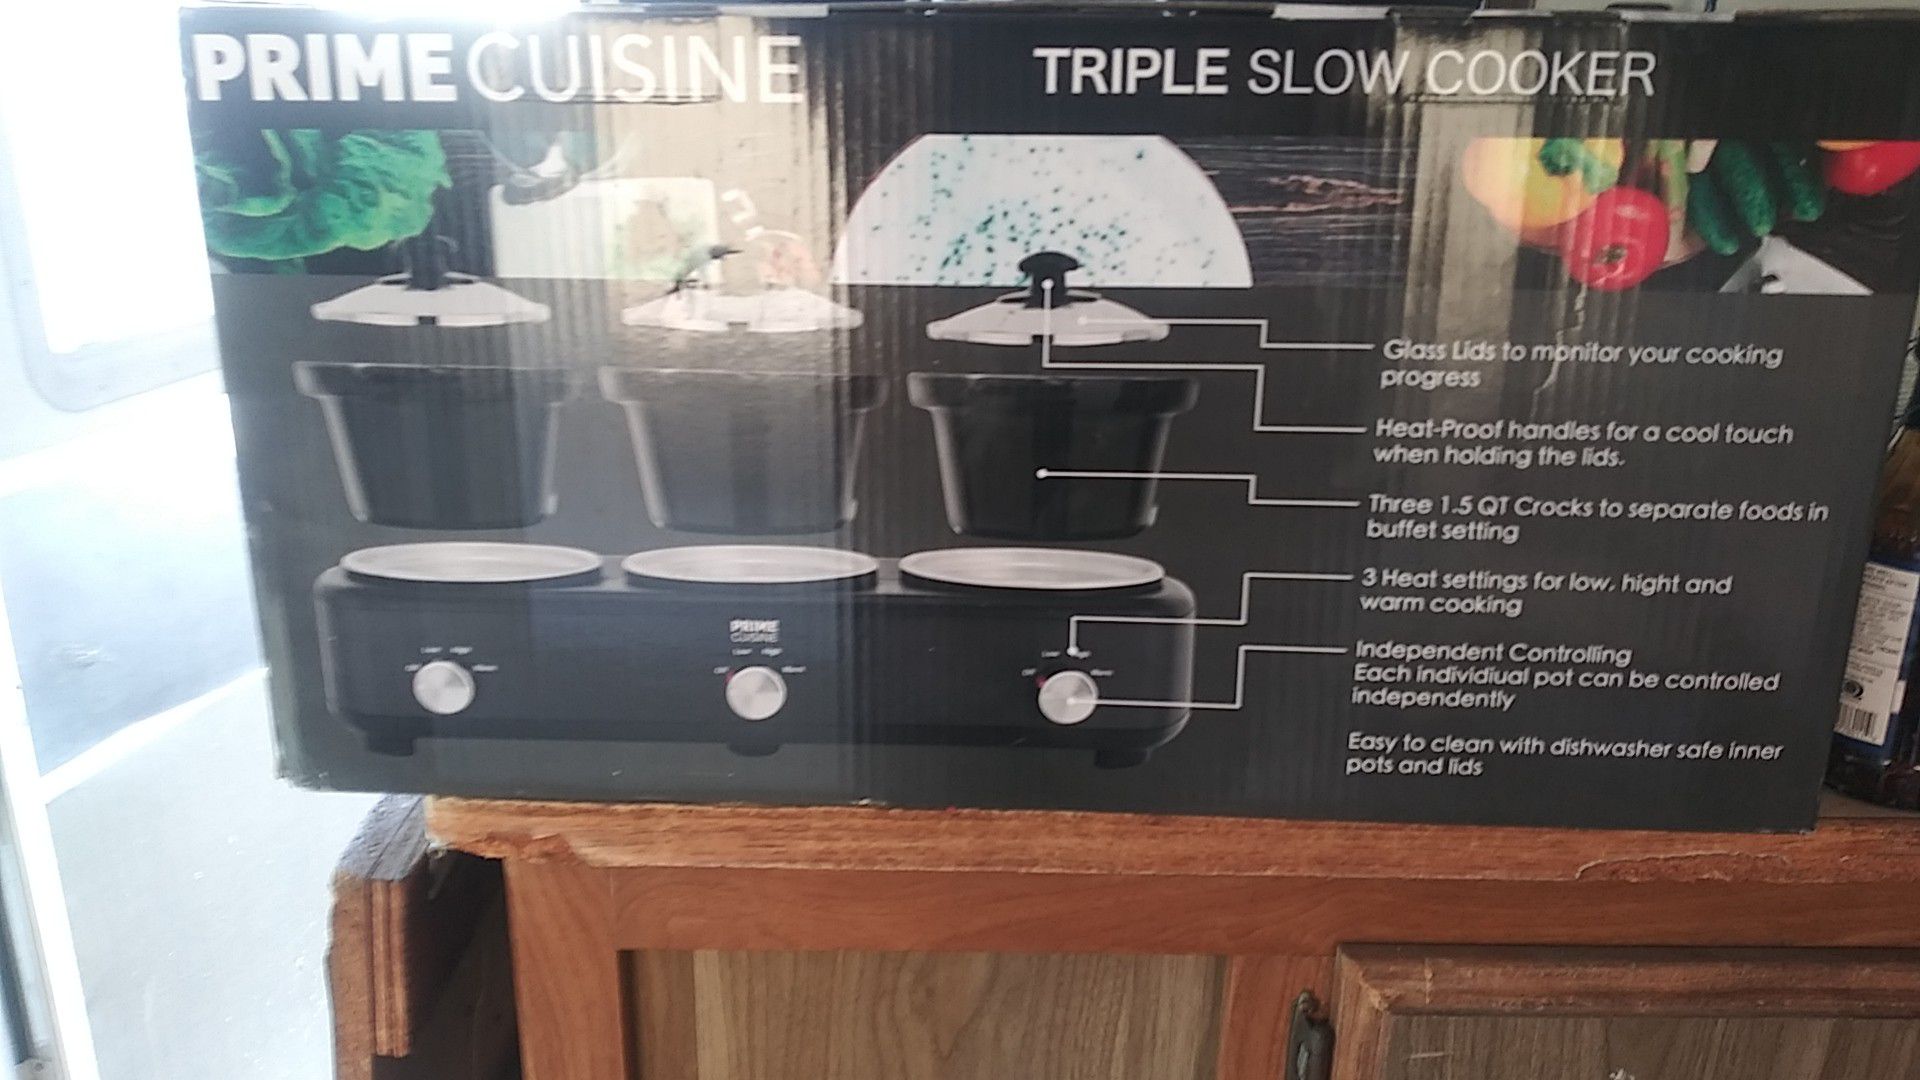 Prime cuisine triple slow cooker